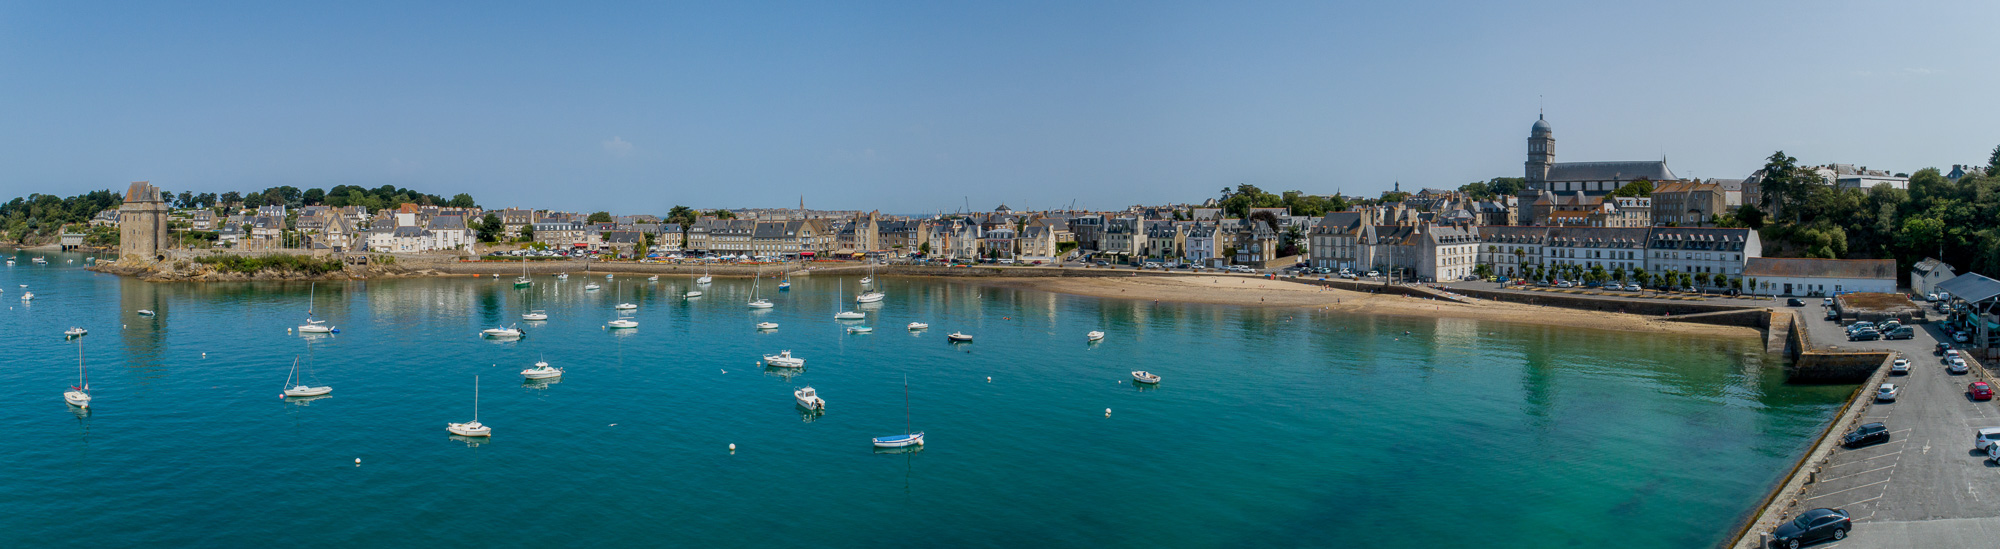 Saint-Malo, quartier de Saint-Servan, la tour Solidor et la plage, vue de drone.